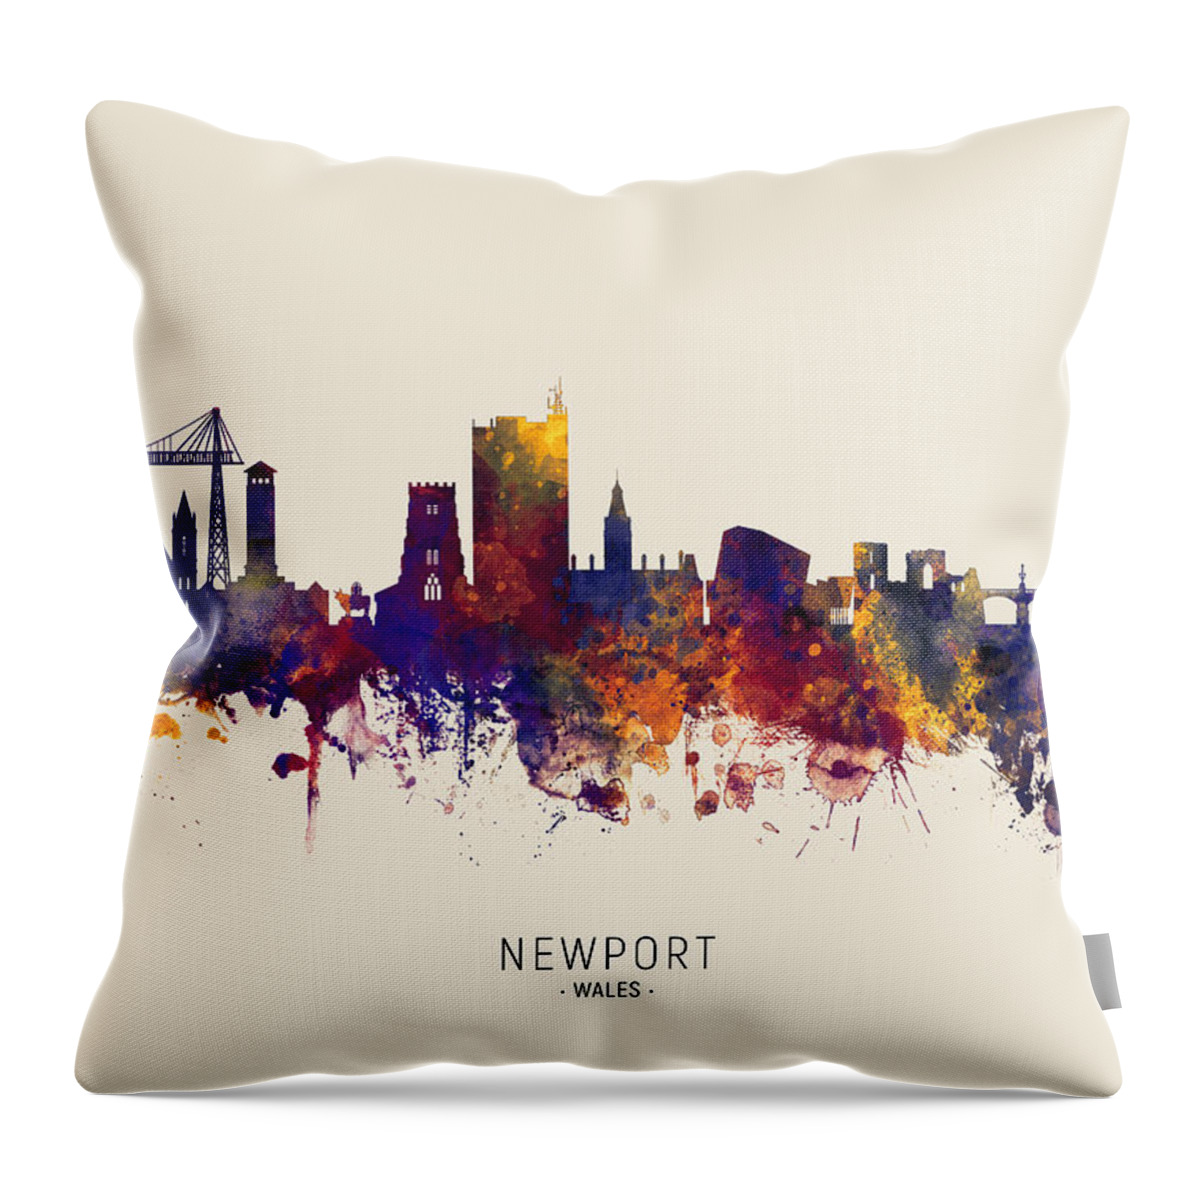 Newport Throw Pillow featuring the digital art Newport Wales Skyline #21 by Michael Tompsett